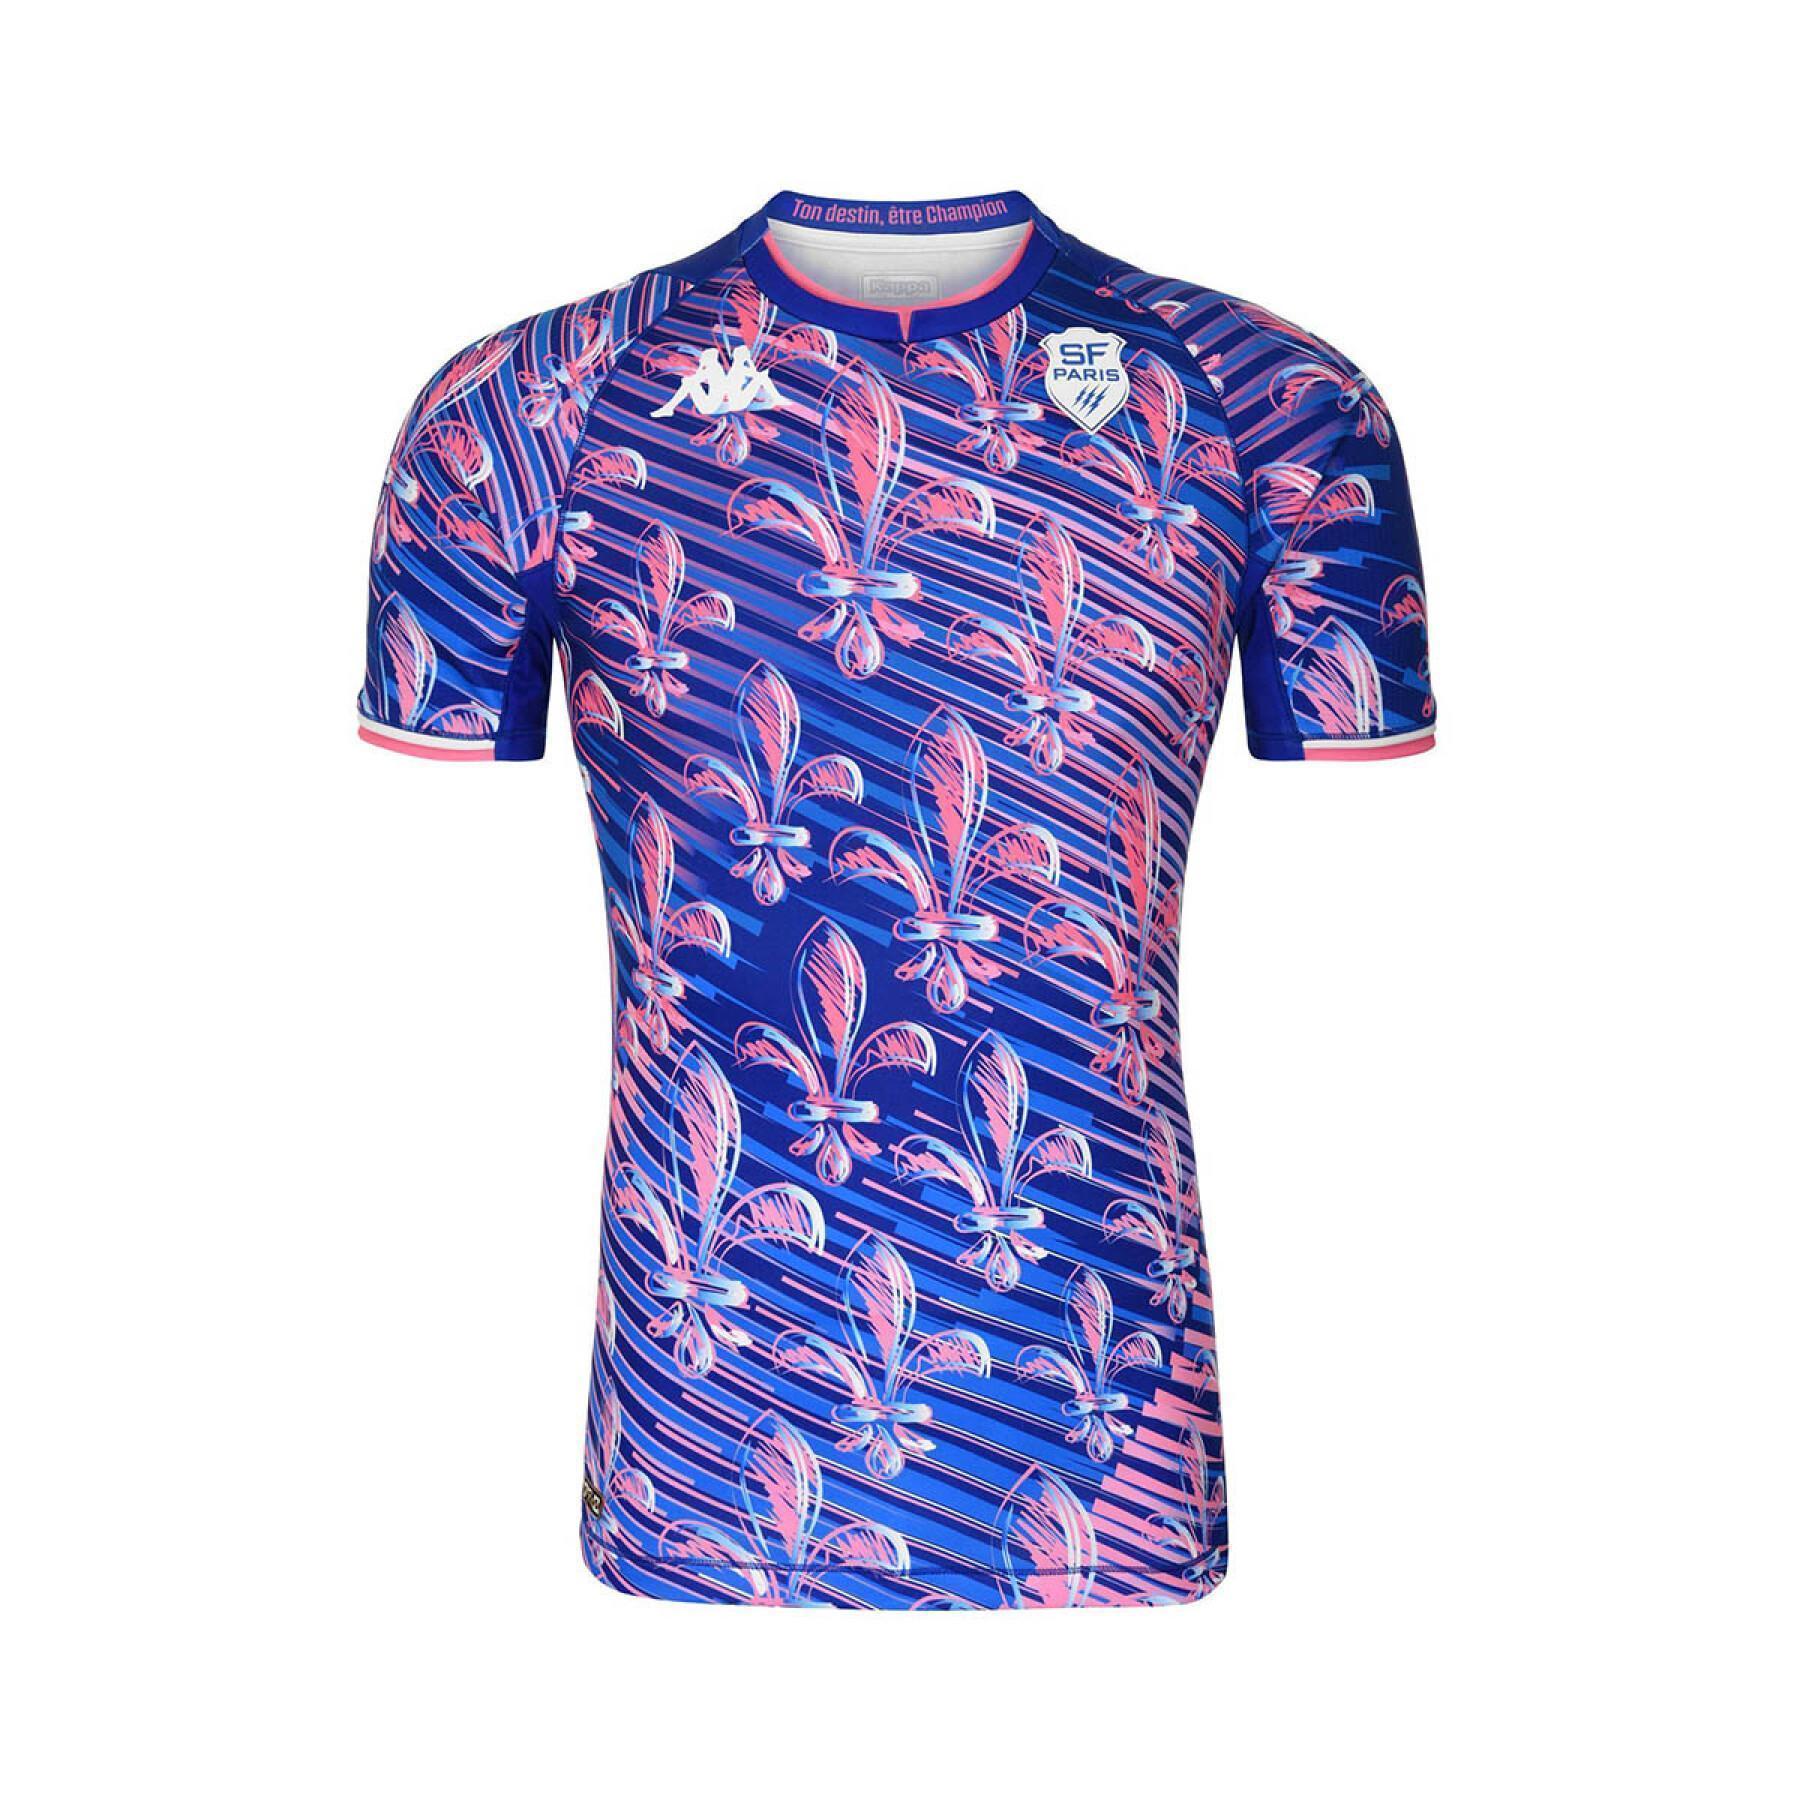 Autentyczna koszulka outdoorowa Stade Français 2021/22